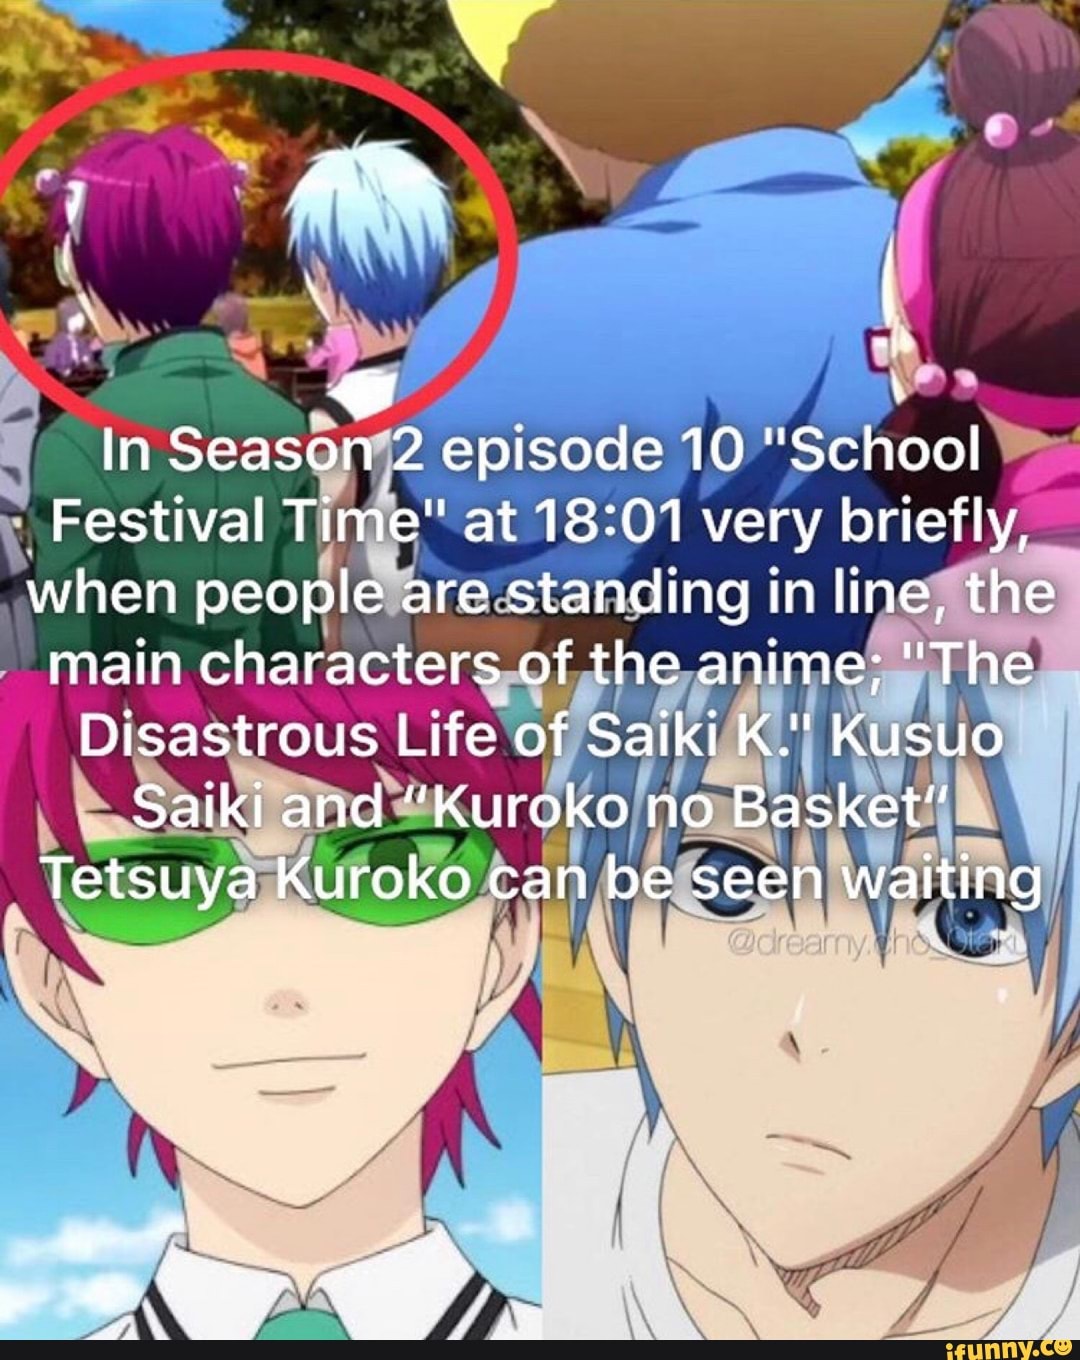 kuroko no basuke episode 10